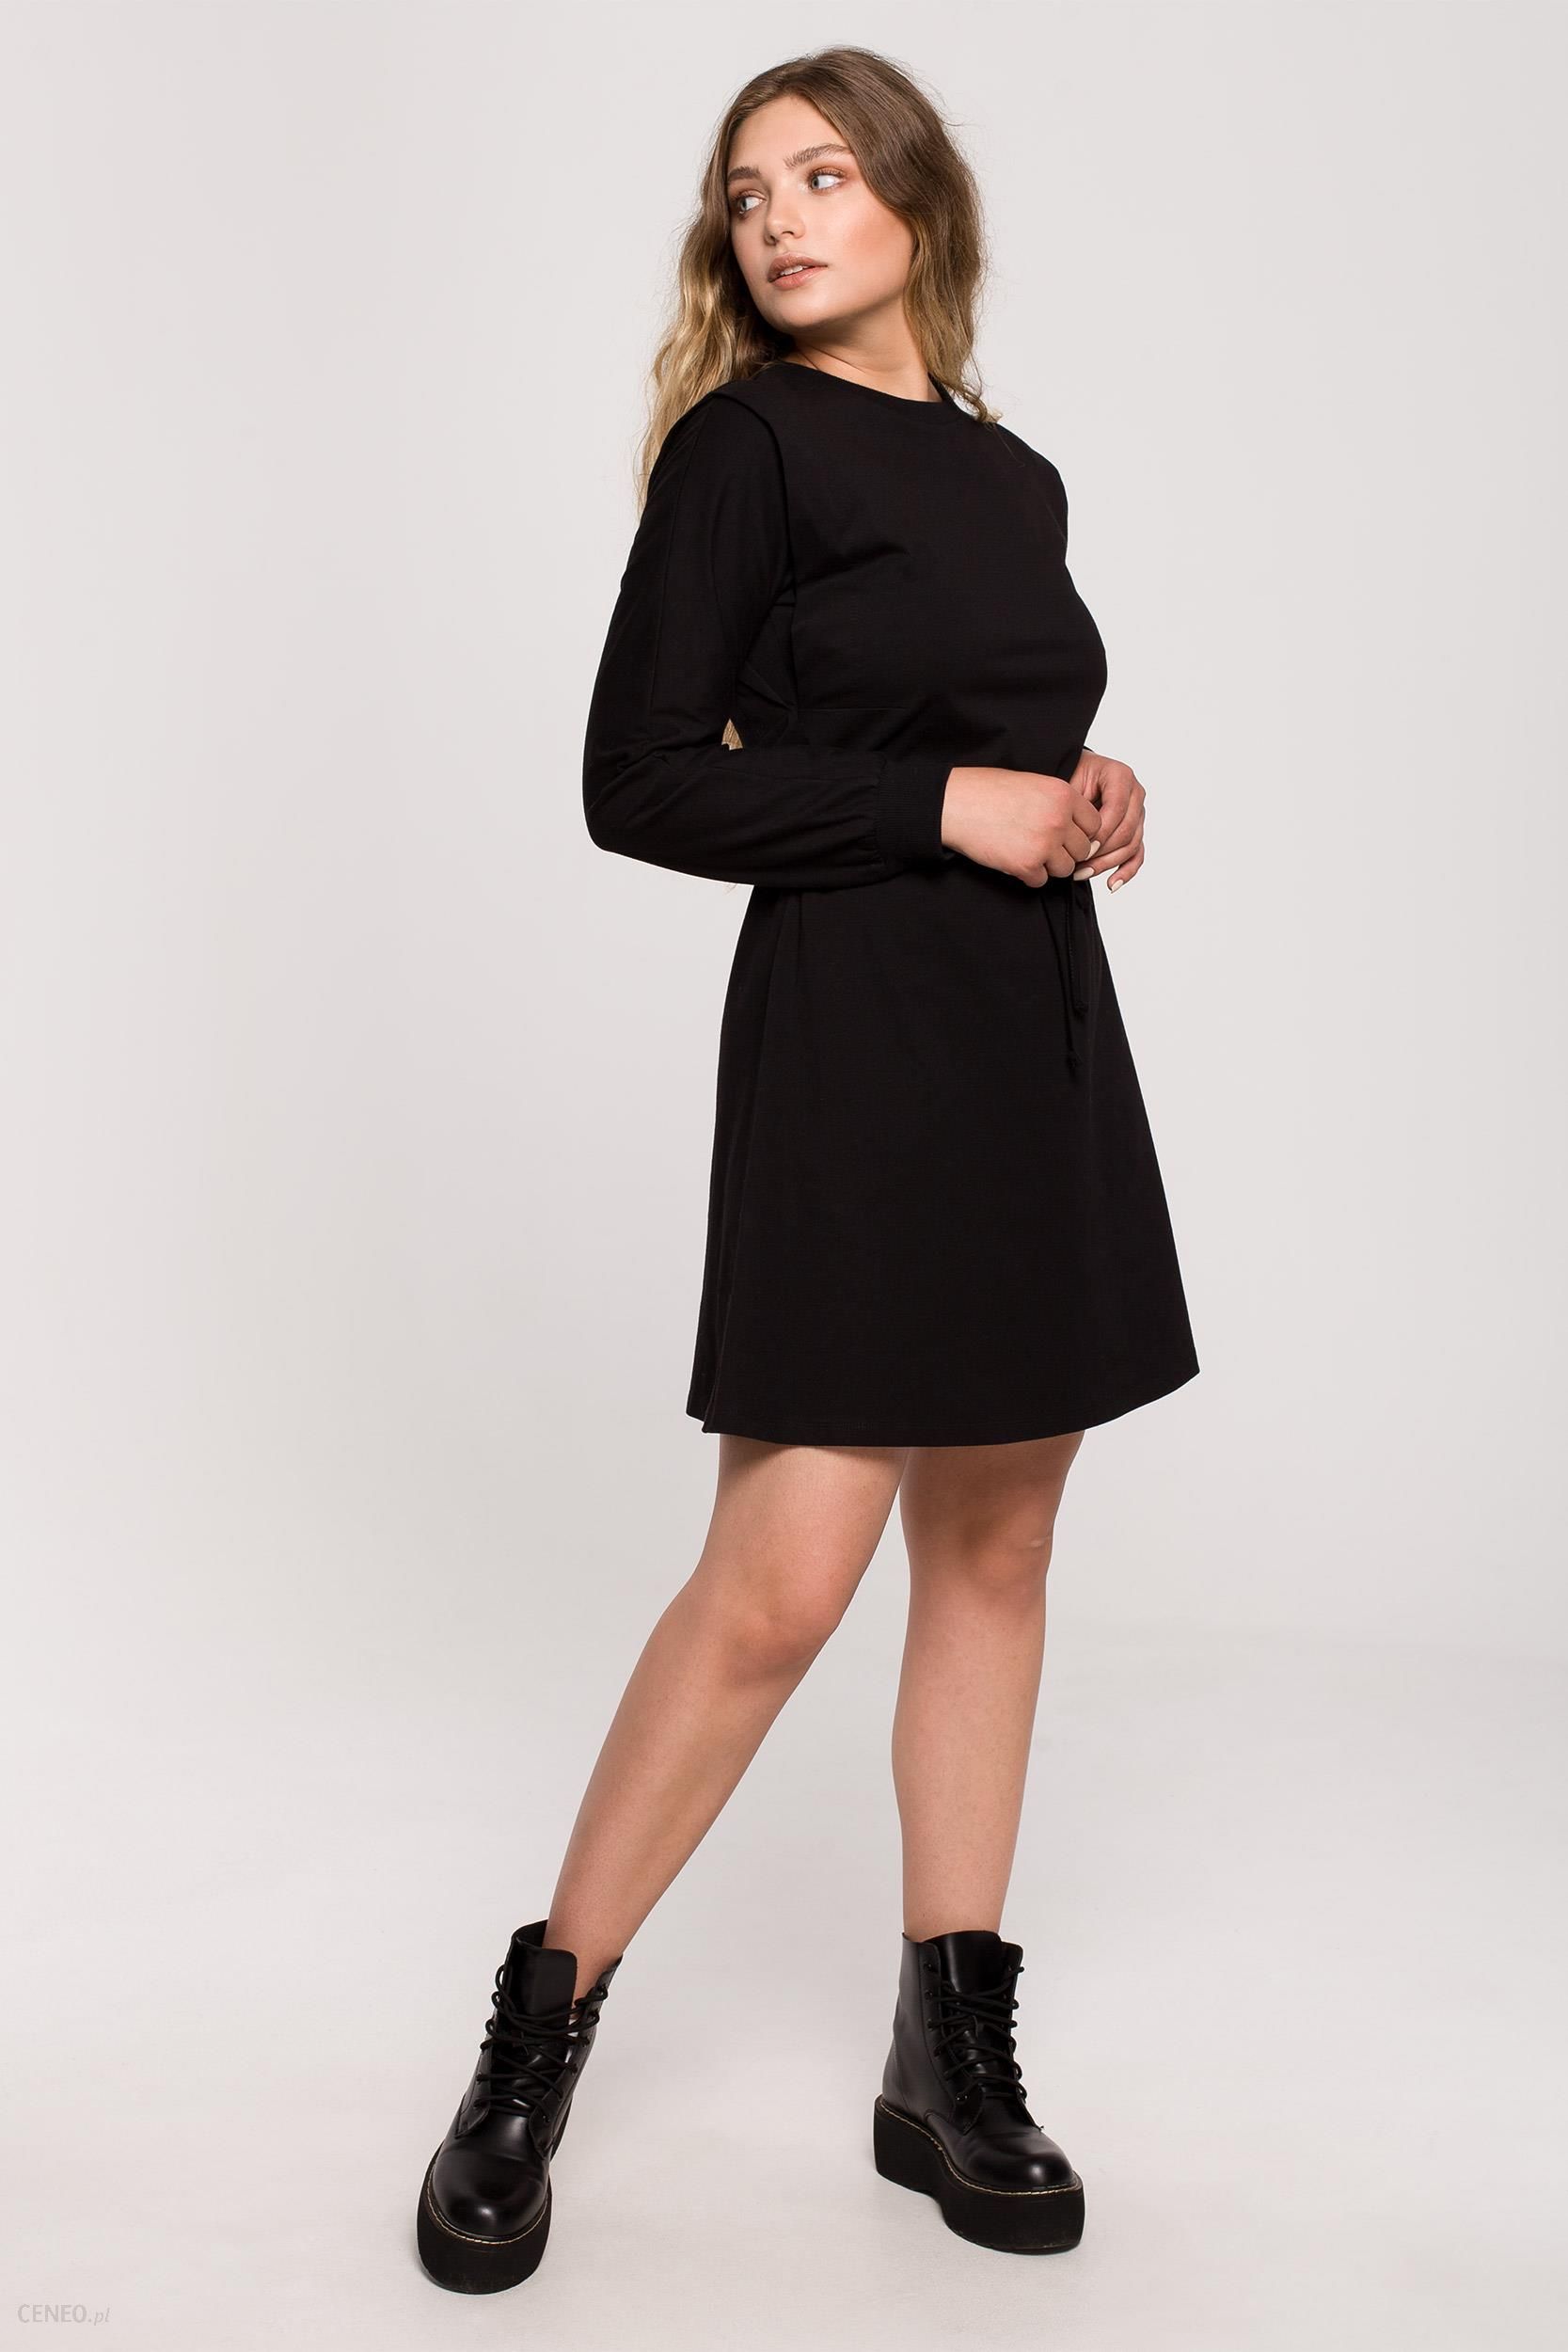 Be Bawełniana rozkloszowana sukienka z wiązaniem Czarny L/XL - Ceny i  opinie 